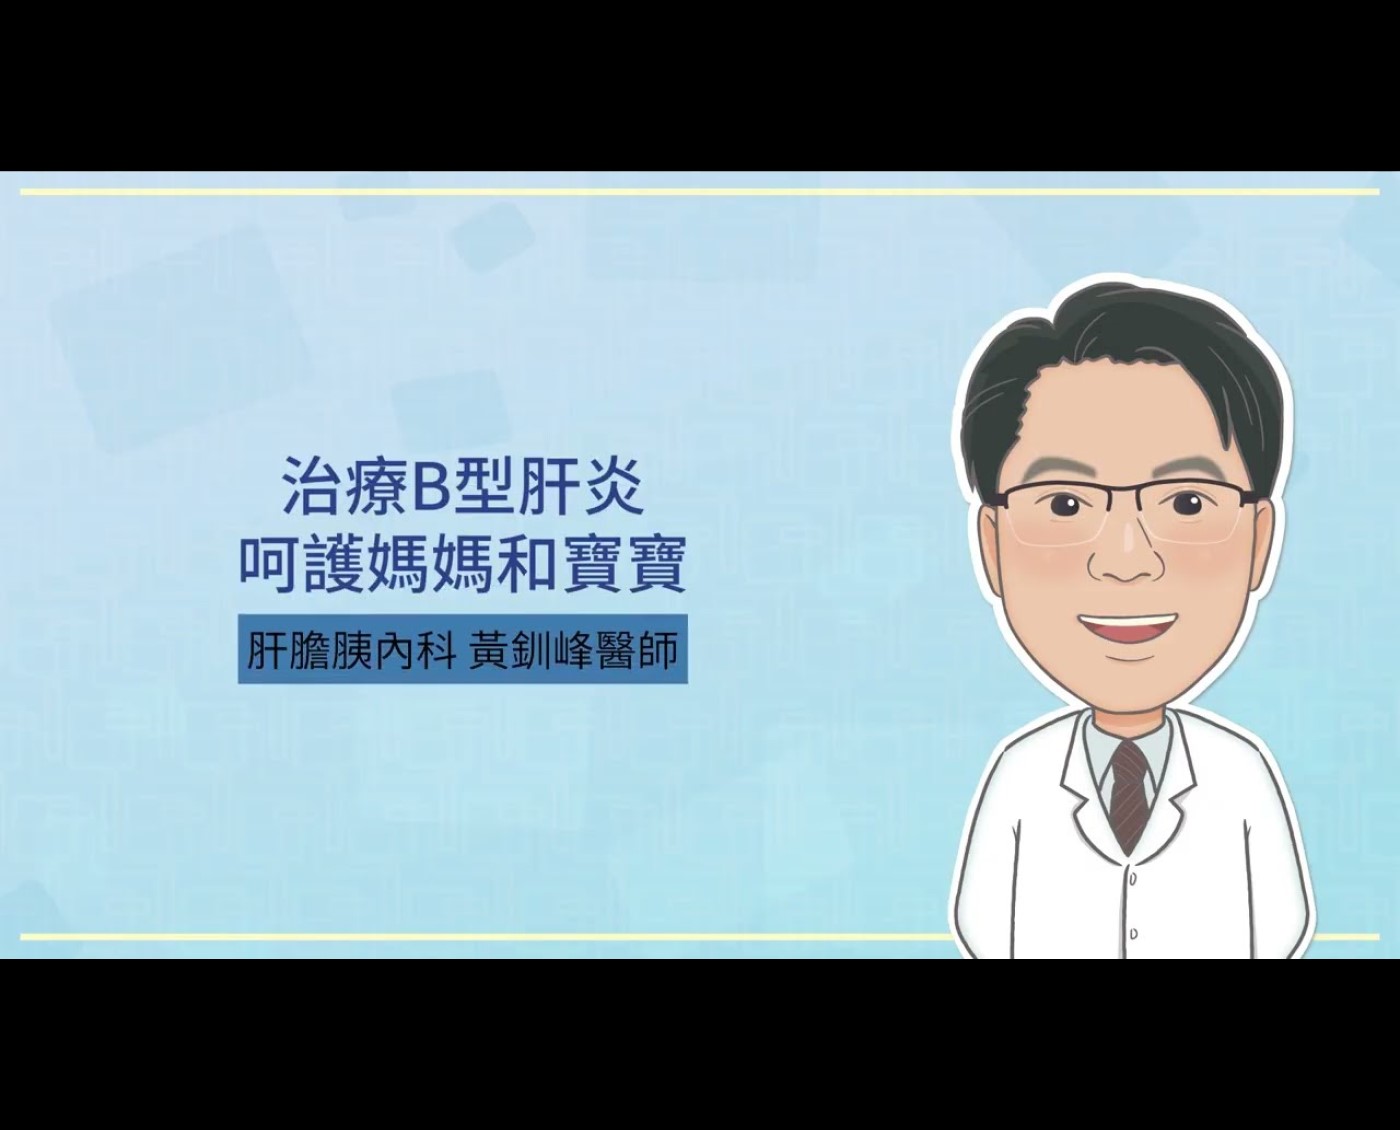 治療B型肝炎，呵護媽媽和寶寶 - 台灣肝臟學術文教基金會